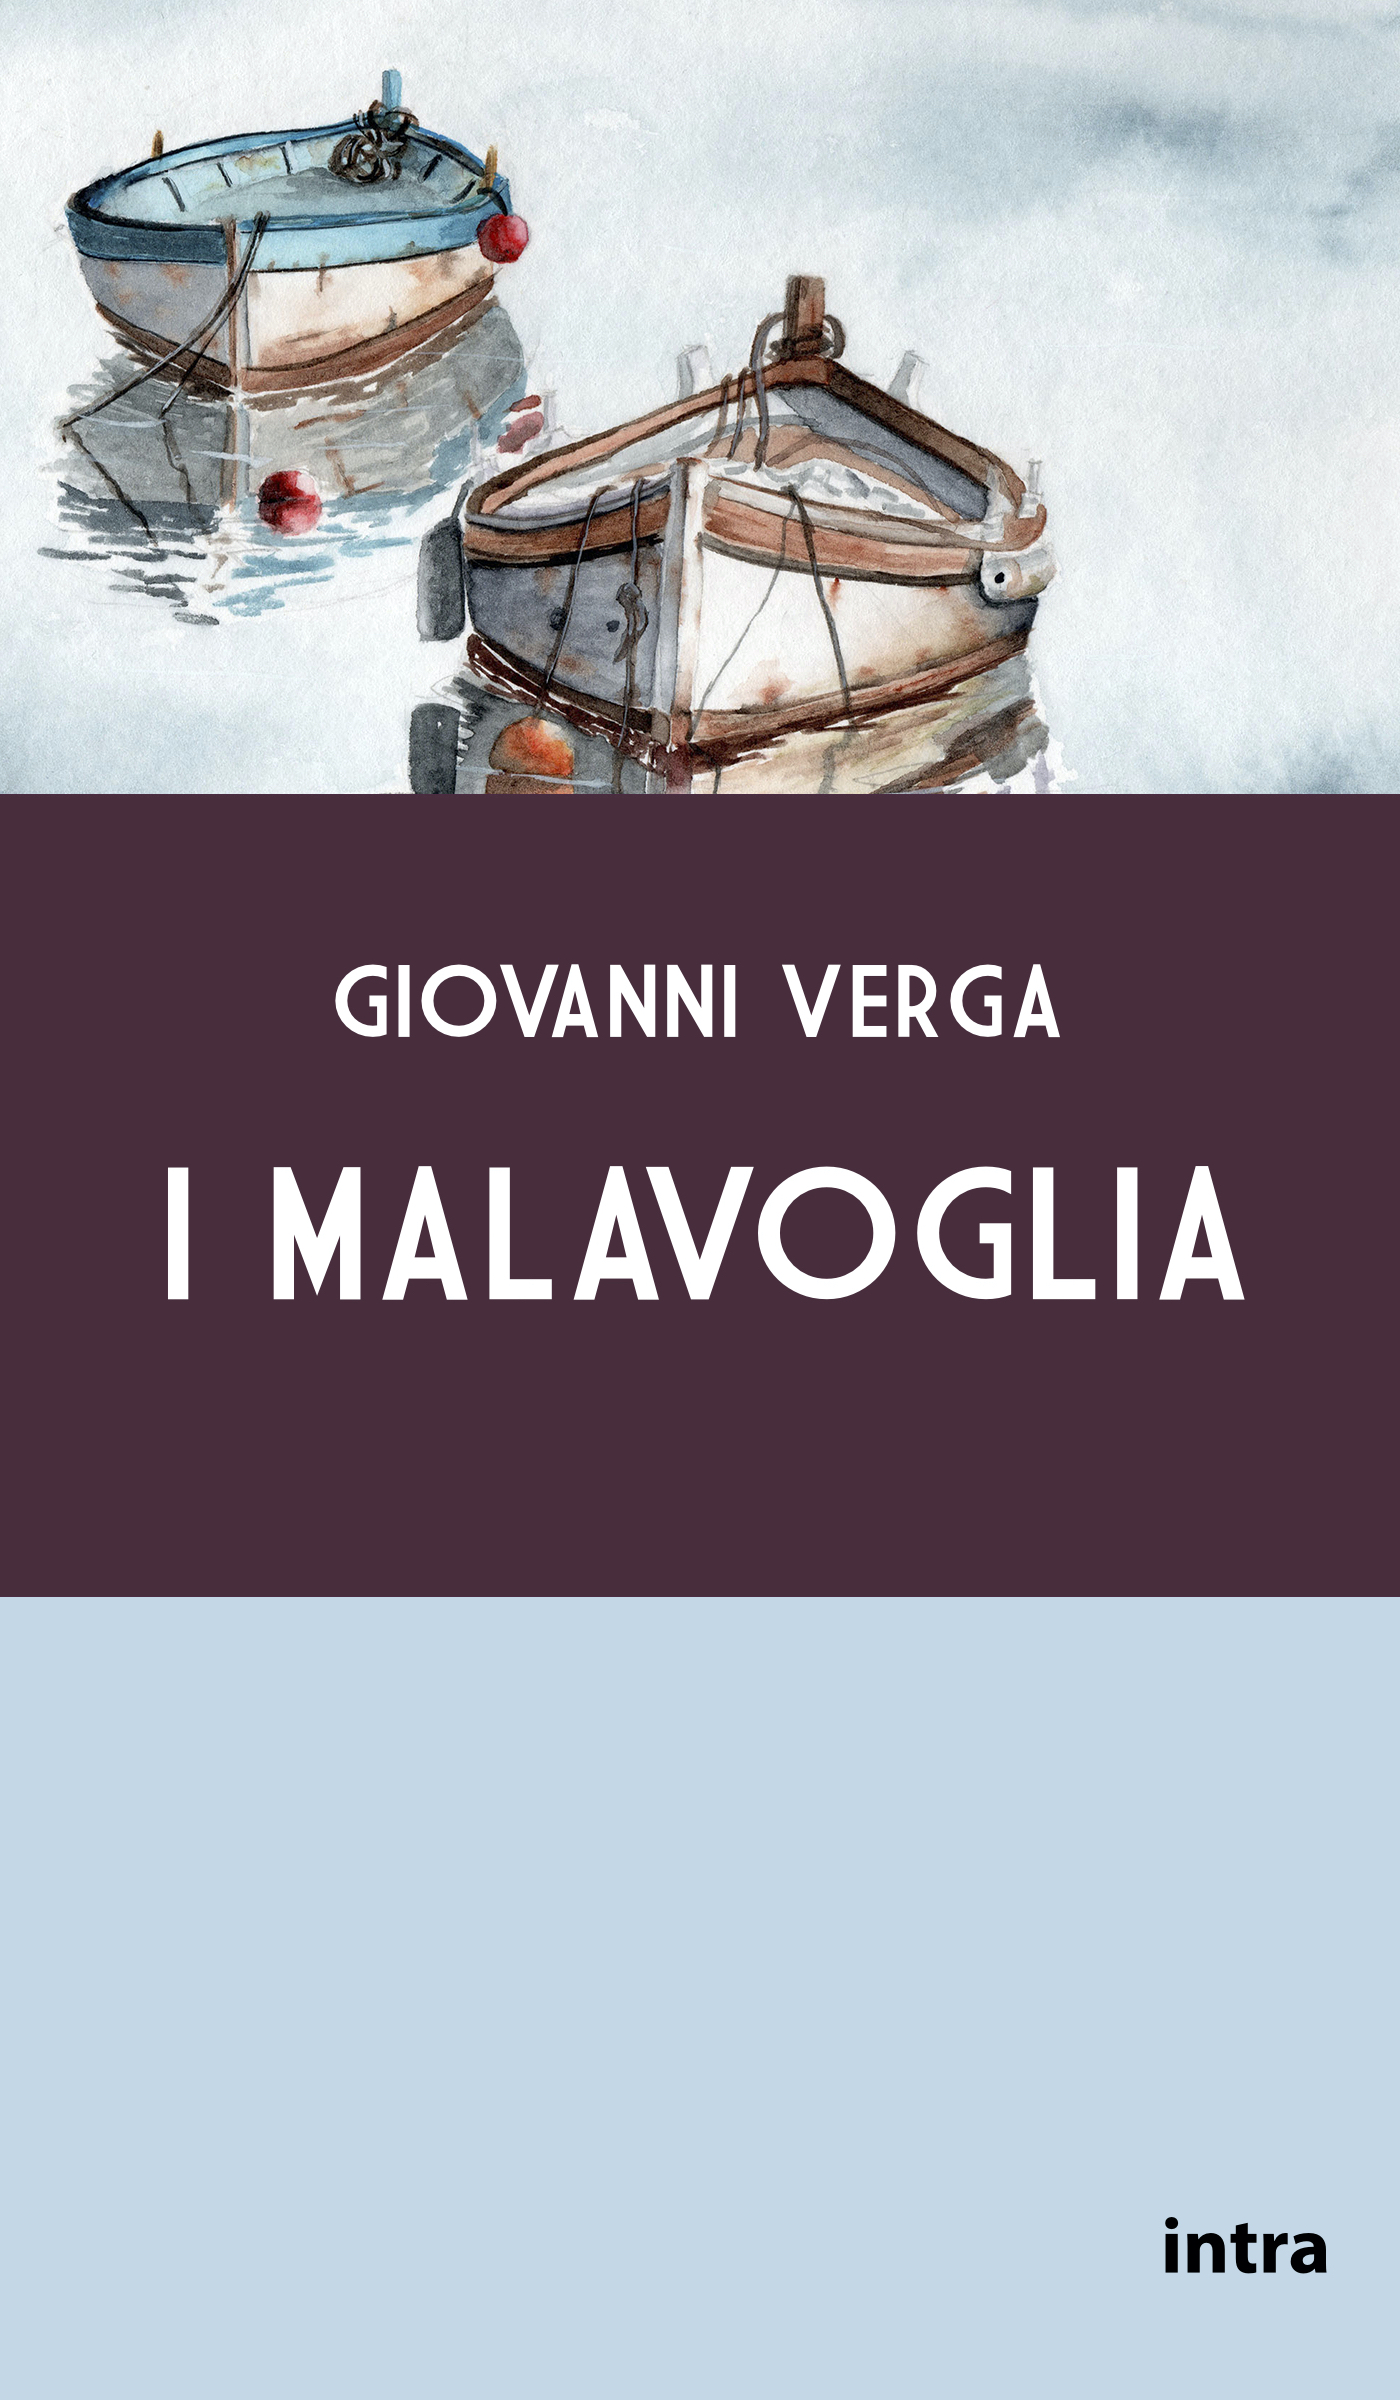 Giovanni Verga, I Malavoglia